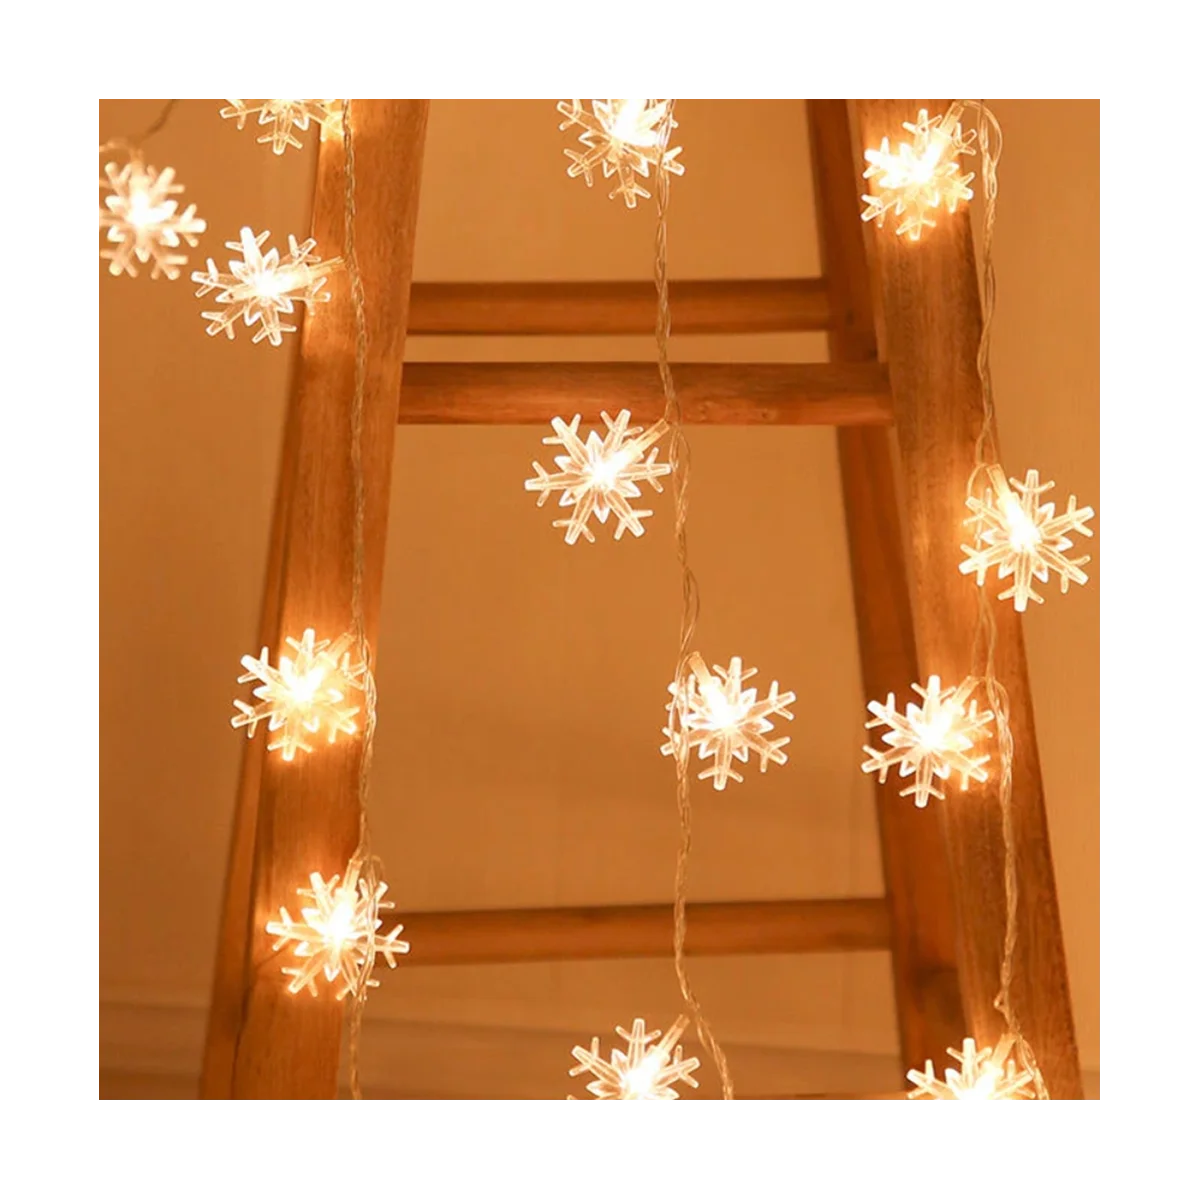 96 Светодиодные гирлянды со снежинками Украшение гирлянды Снежной феи на Рождество Хэллоуин Новый год Домашний декор ЕС Plug-C